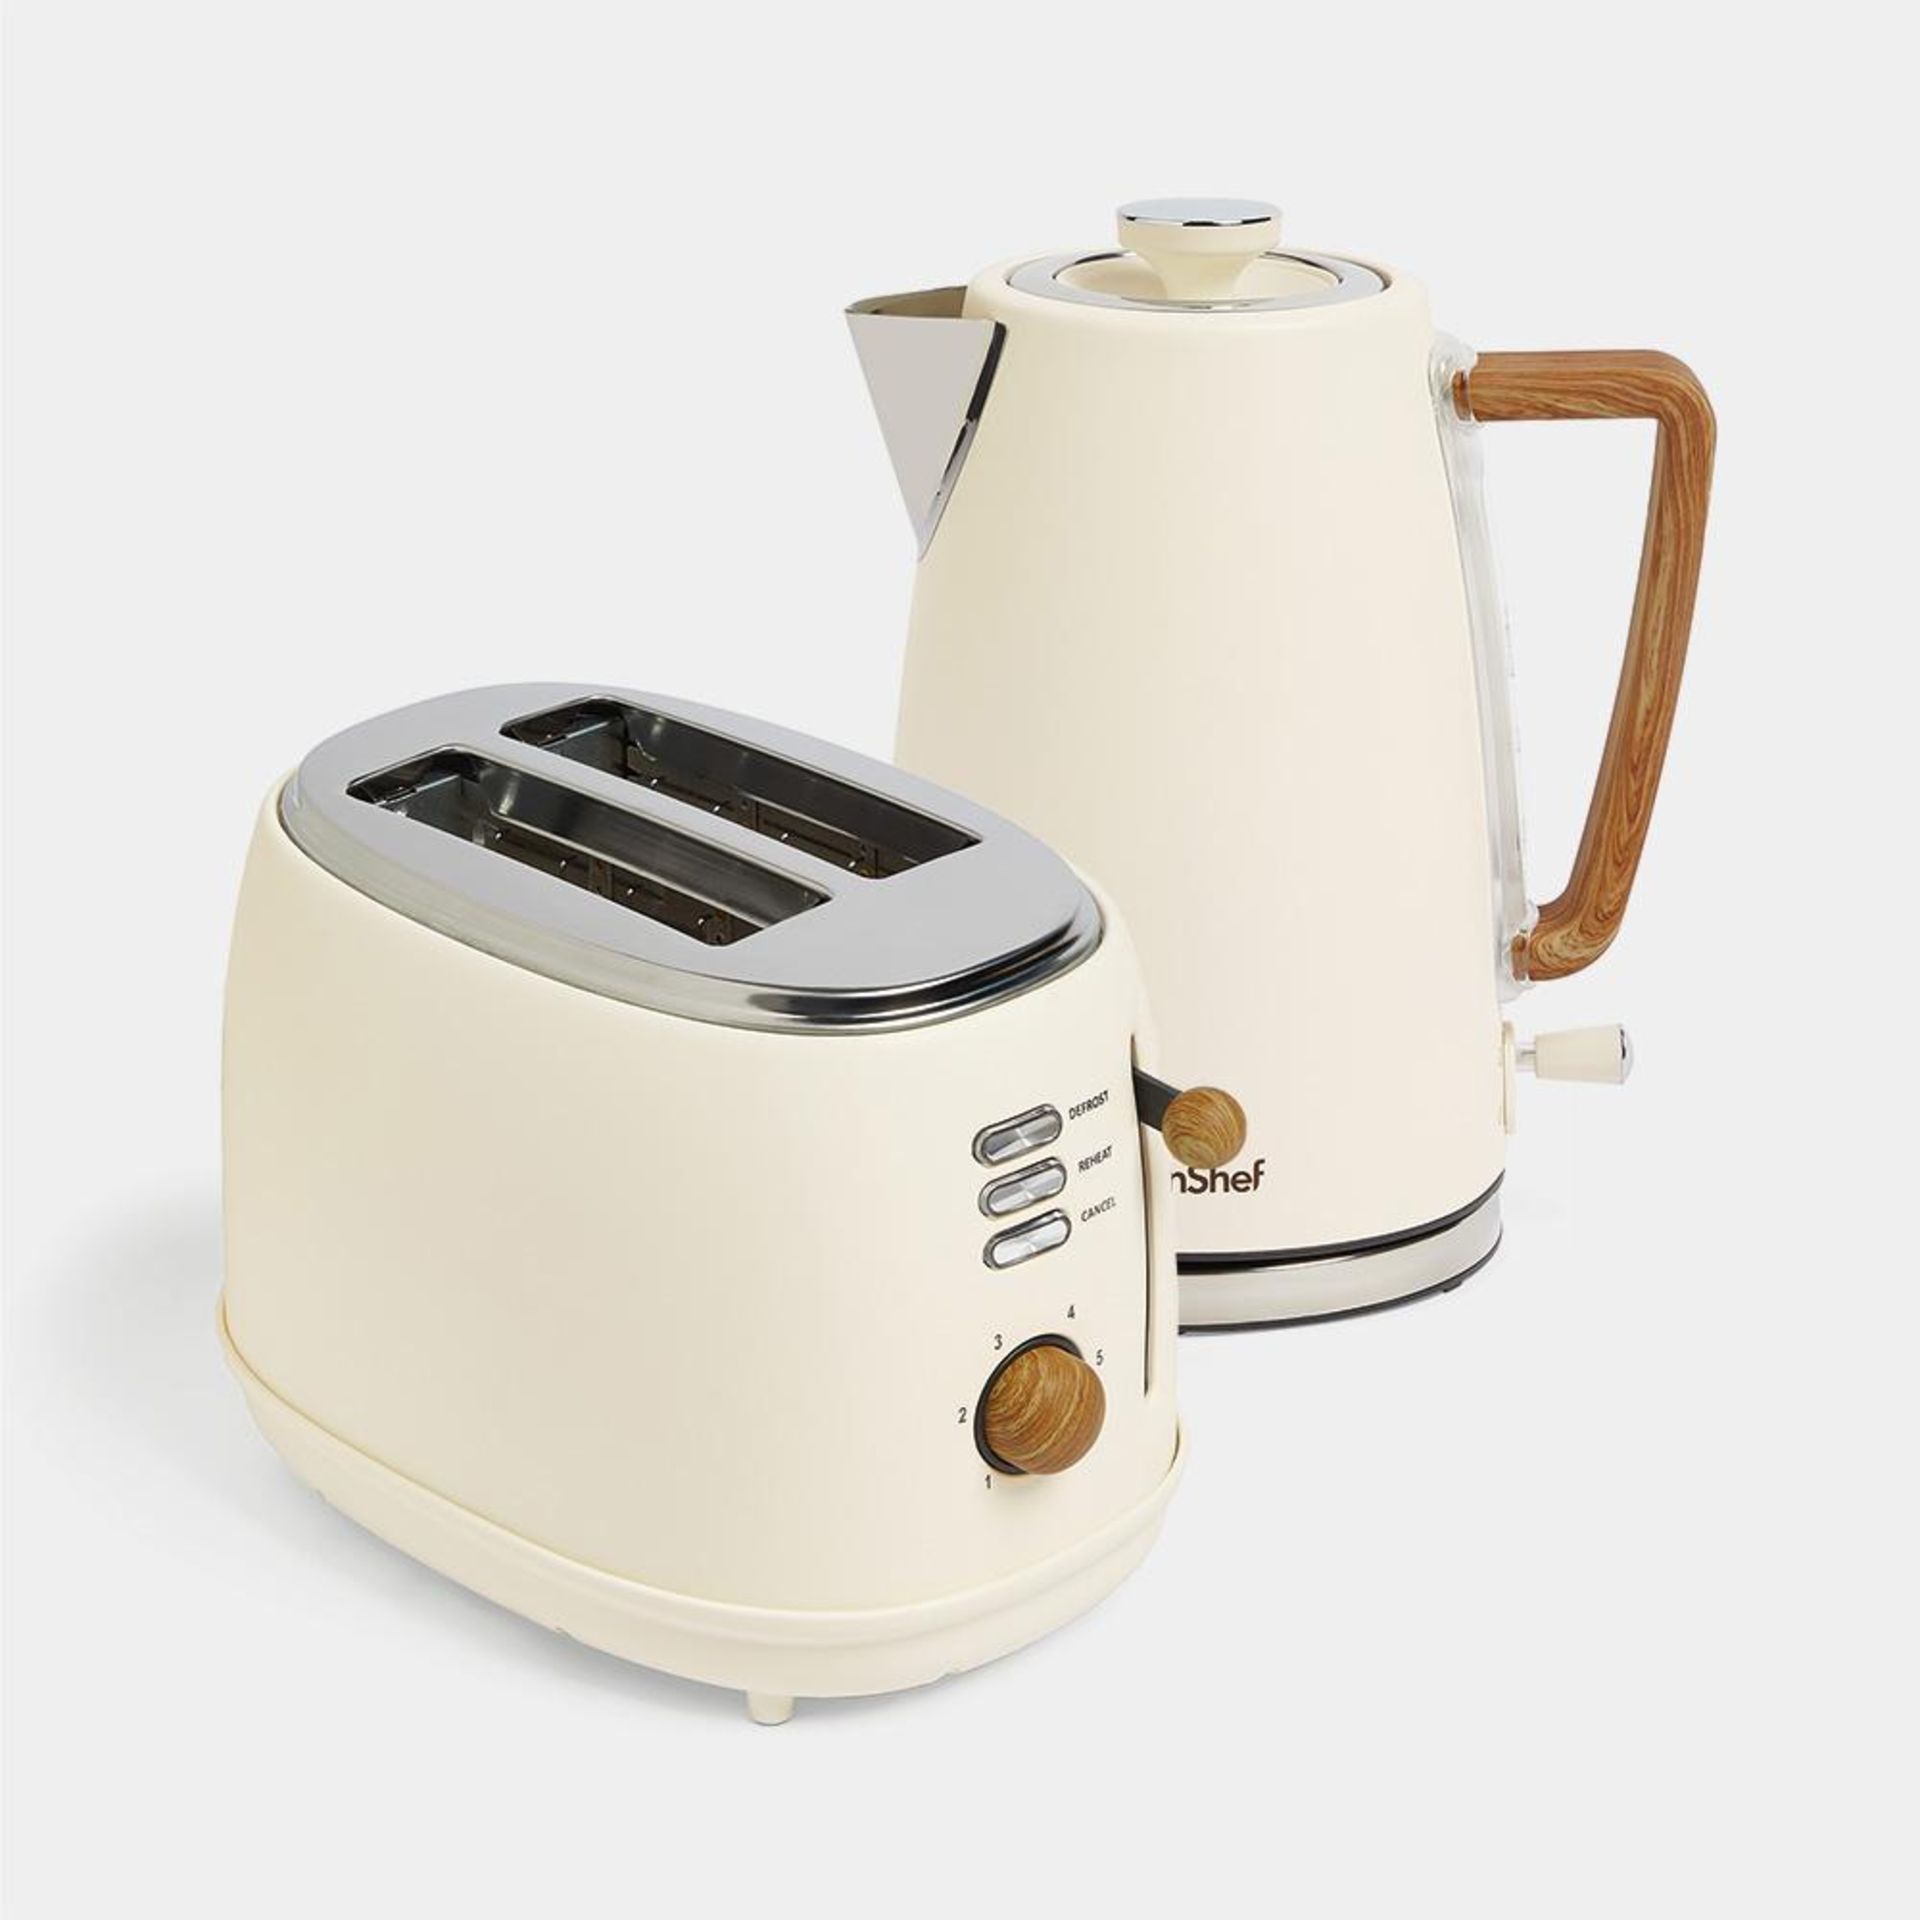 Cream & Wood Kettle & Toaster Set - Luxury - ER51. Cream & Wood Kettle & Toaster SetWith a Nordic-